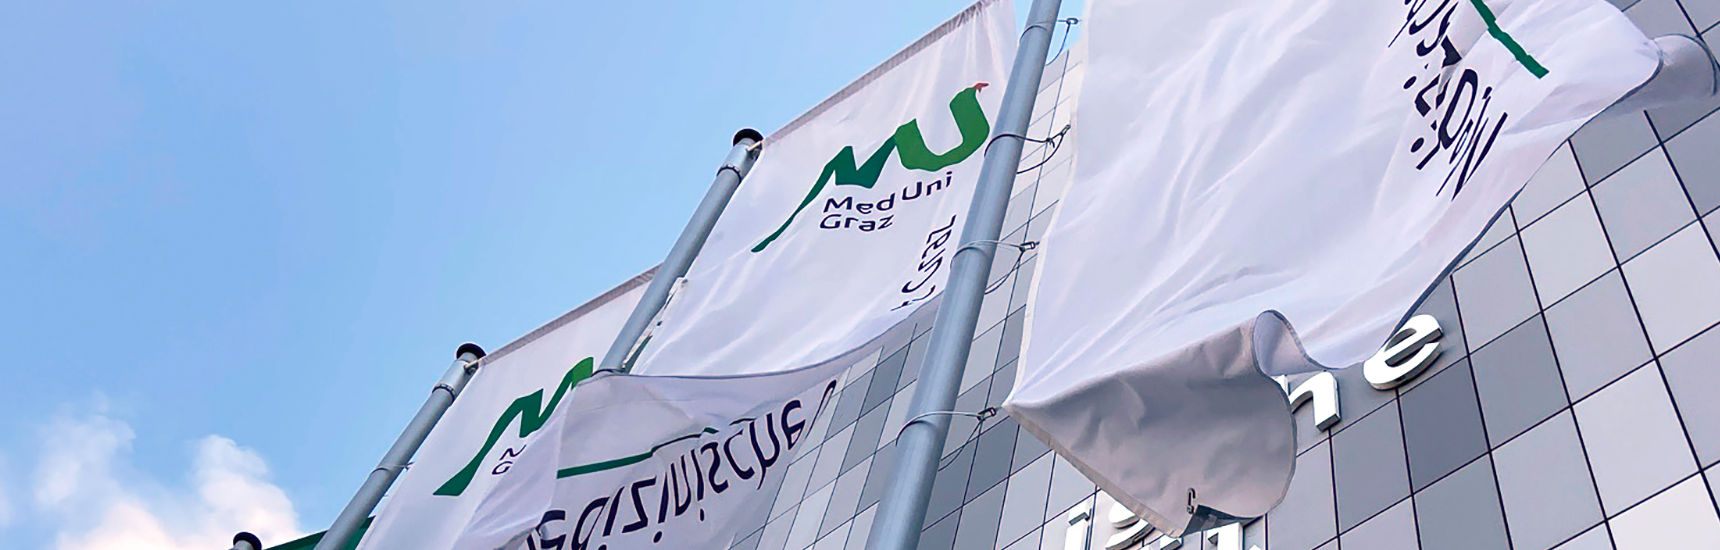 Flaggen am Campus der Med Uni Graz